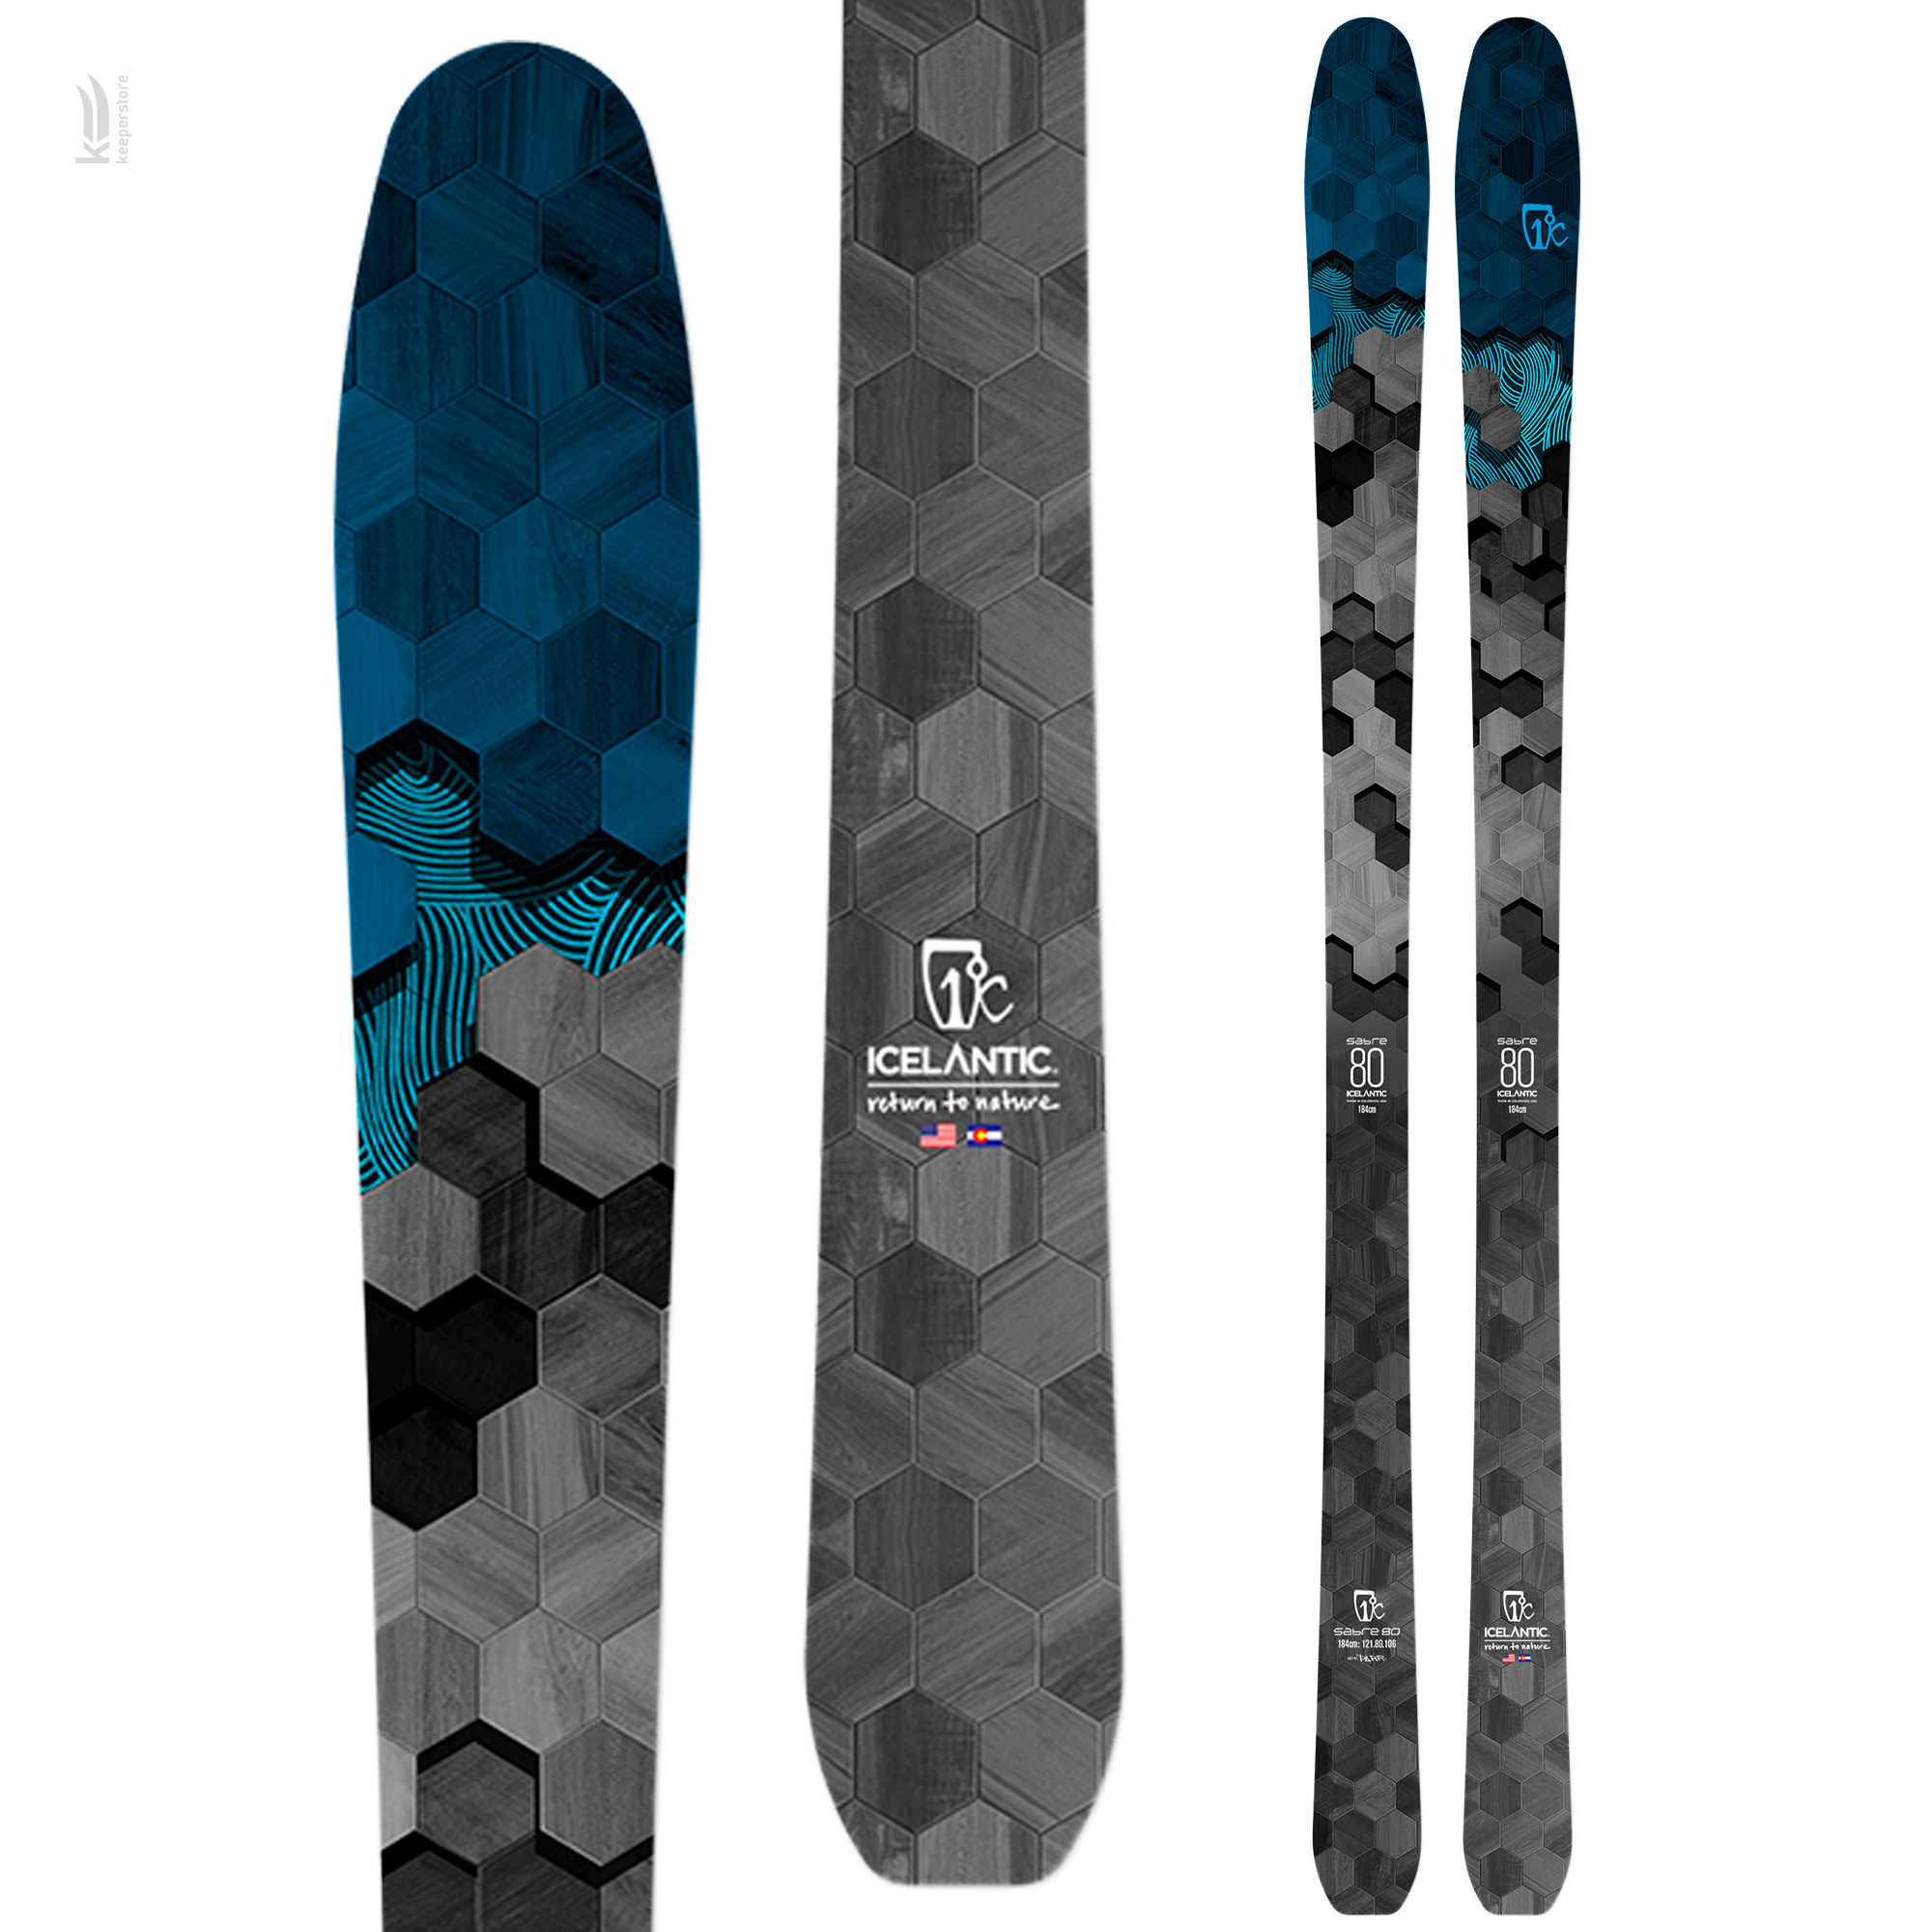 Лыжи для карвинга Icelantic Sabre 80 2020/2021 174cm